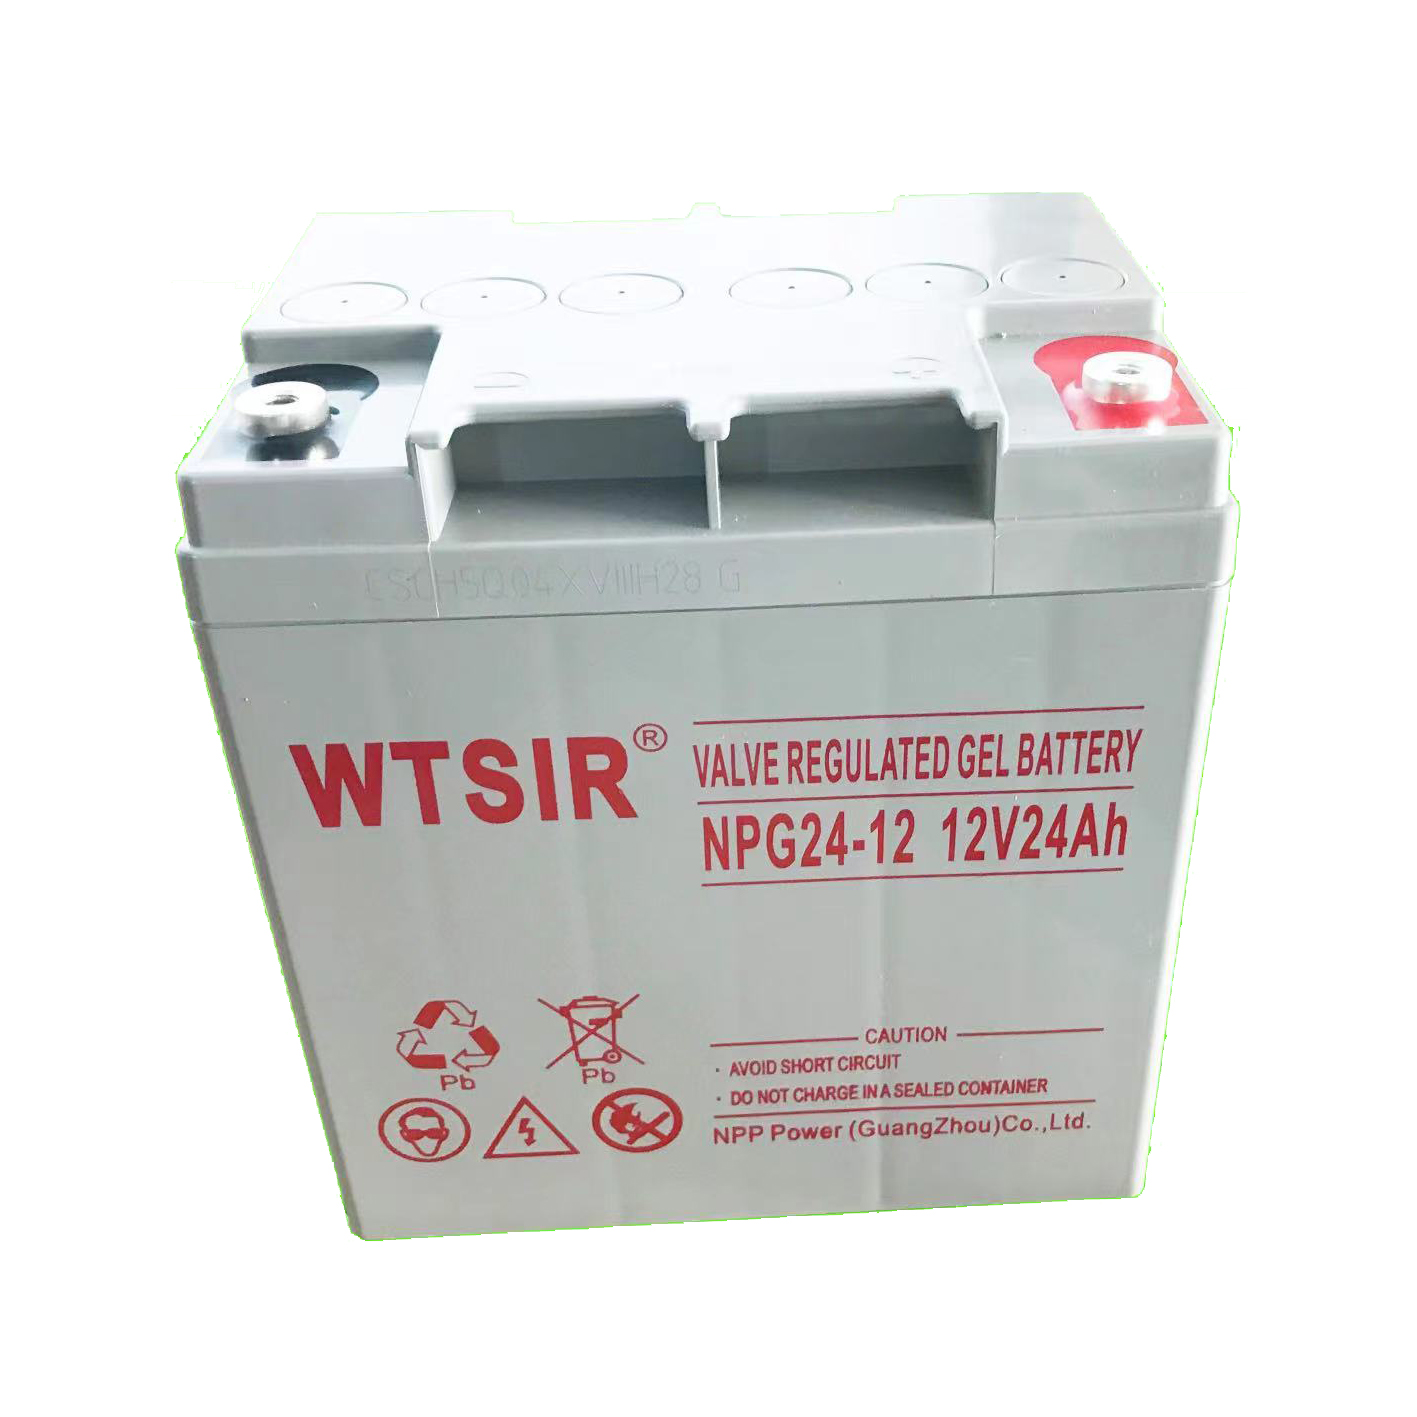 维塔斯WTSIR蓄电池安全事项 